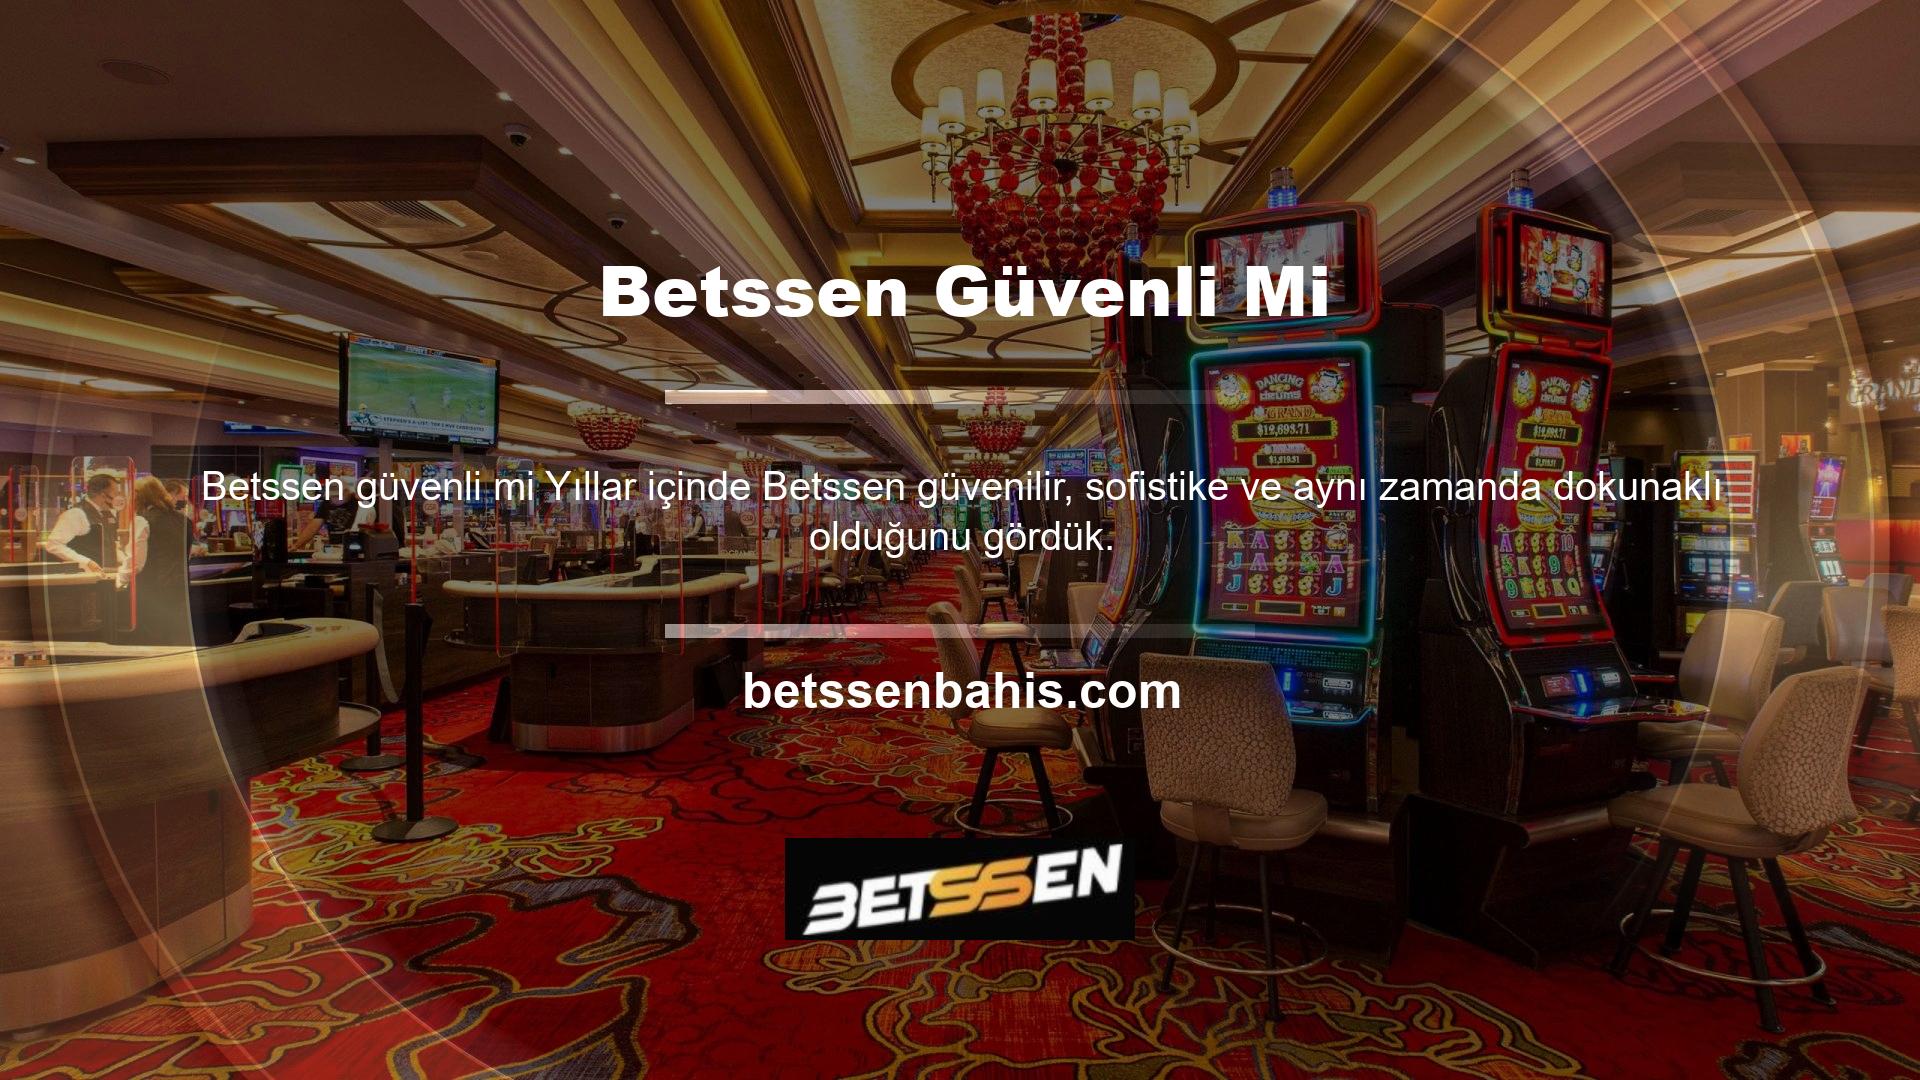 Tabii ki, Betssen kavramsal olarak makul olsa bile, casino endüstrisinin karşı karşıya olduğu önyargılar ve sorunlar göz ardı edilecektir